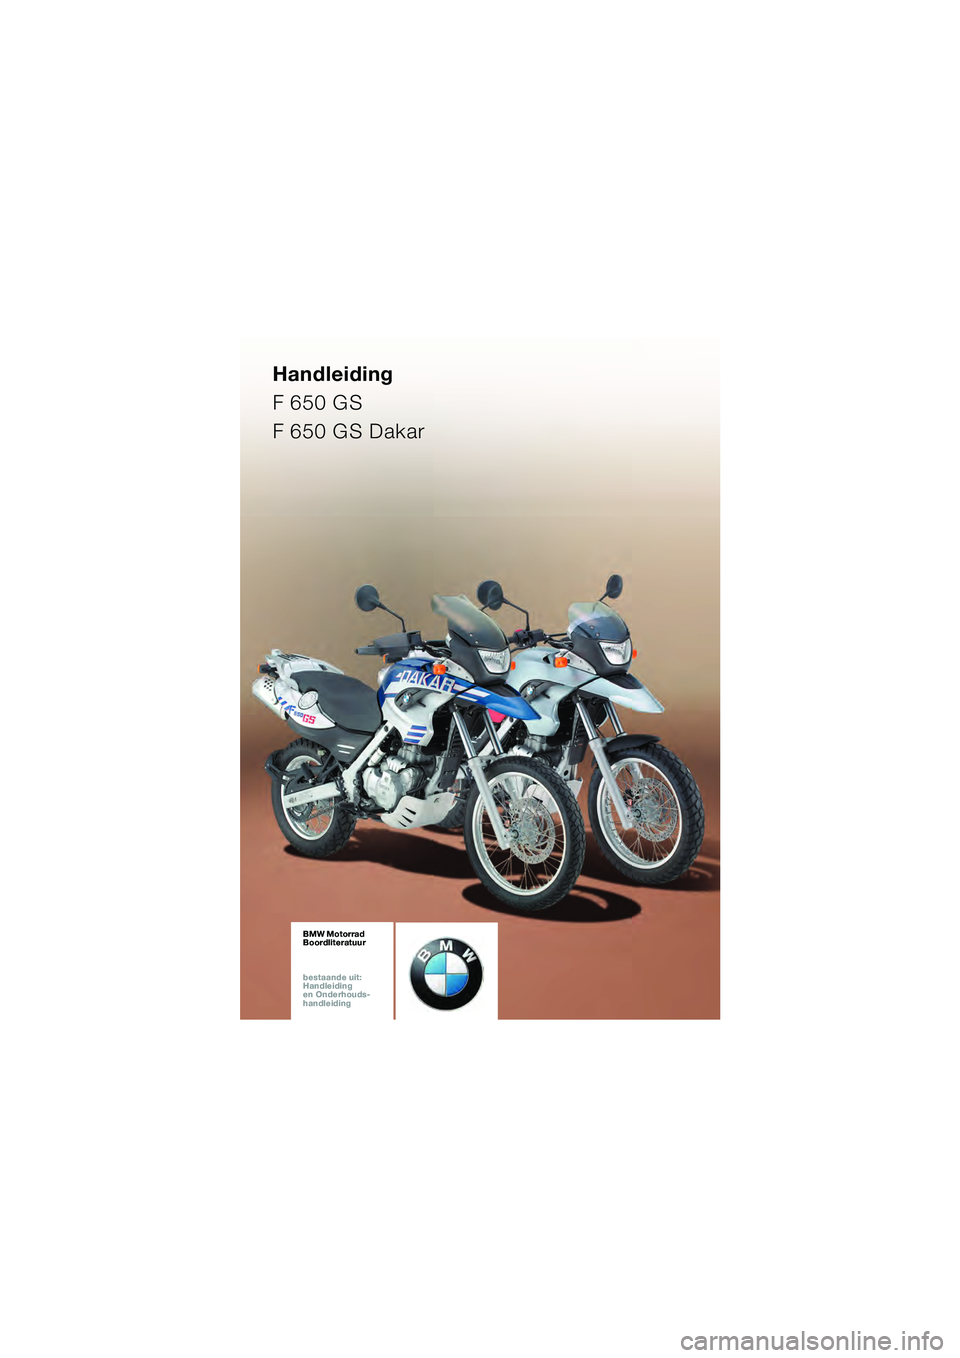 BMW MOTORRAD F 650 GS 2003  Handleiding (in Dutch) Handleiding
F 650 GS
F 650 GS Dakar
BMW Motorrad
Boordliteratuur
bestaande uit:  
Handleiding  
en Onderhouds- 
handleidingBMW Motorrad
Boordliteratuur
bestaande uit:  
Handleiding  
en Onderhouds- 
h